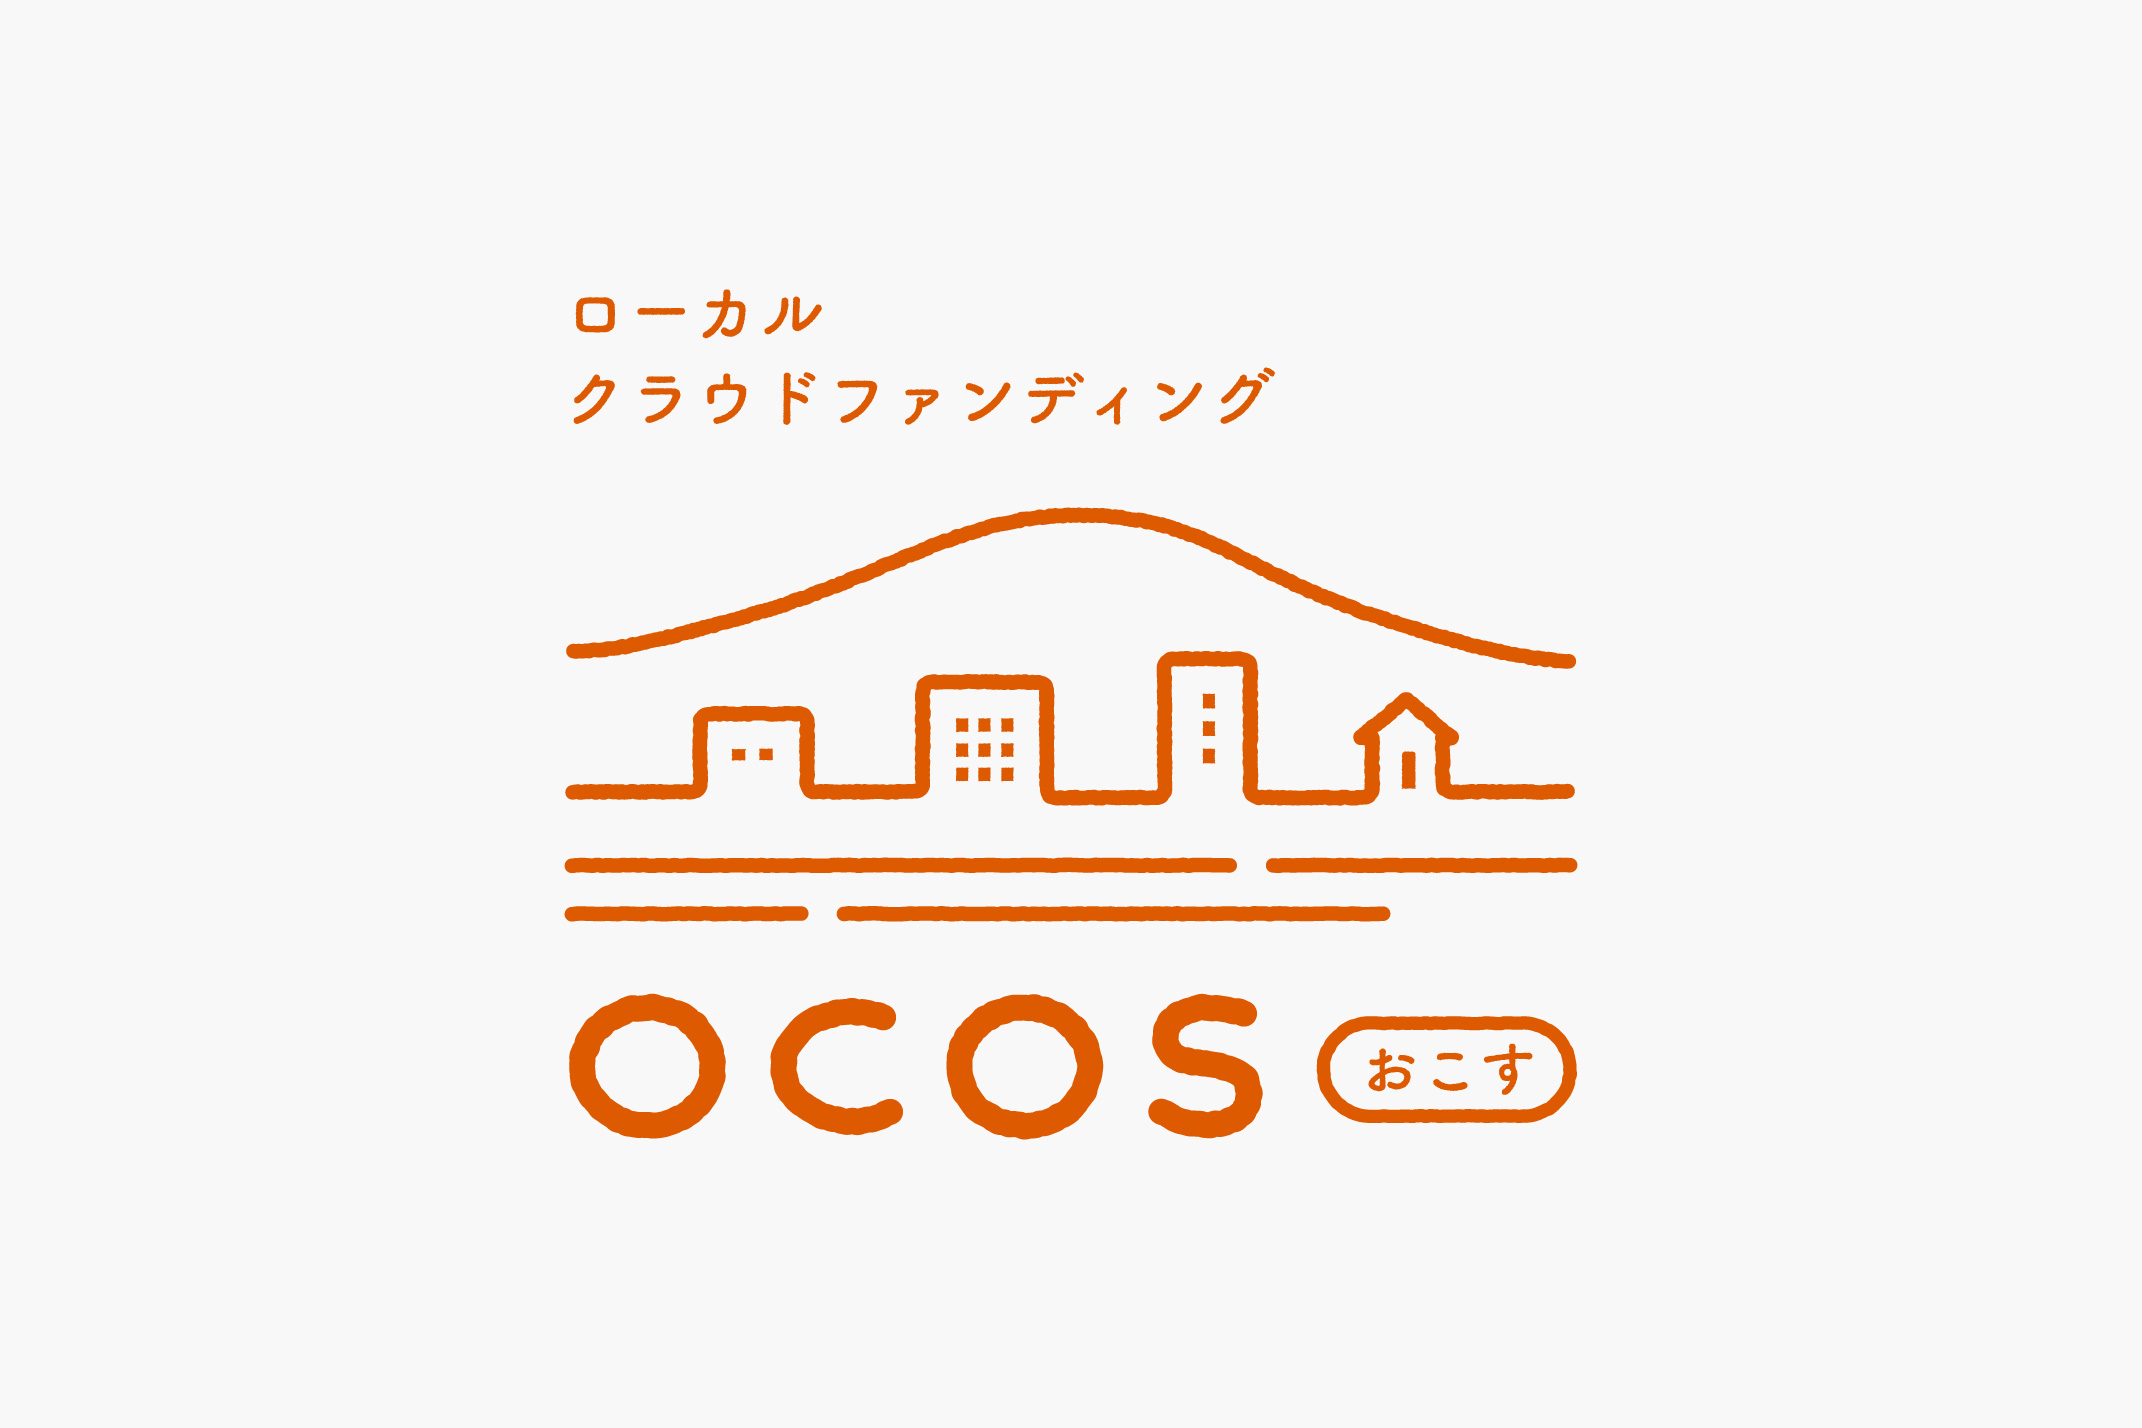 OCOS / ロゴ・リーフレット・チラシの写真です